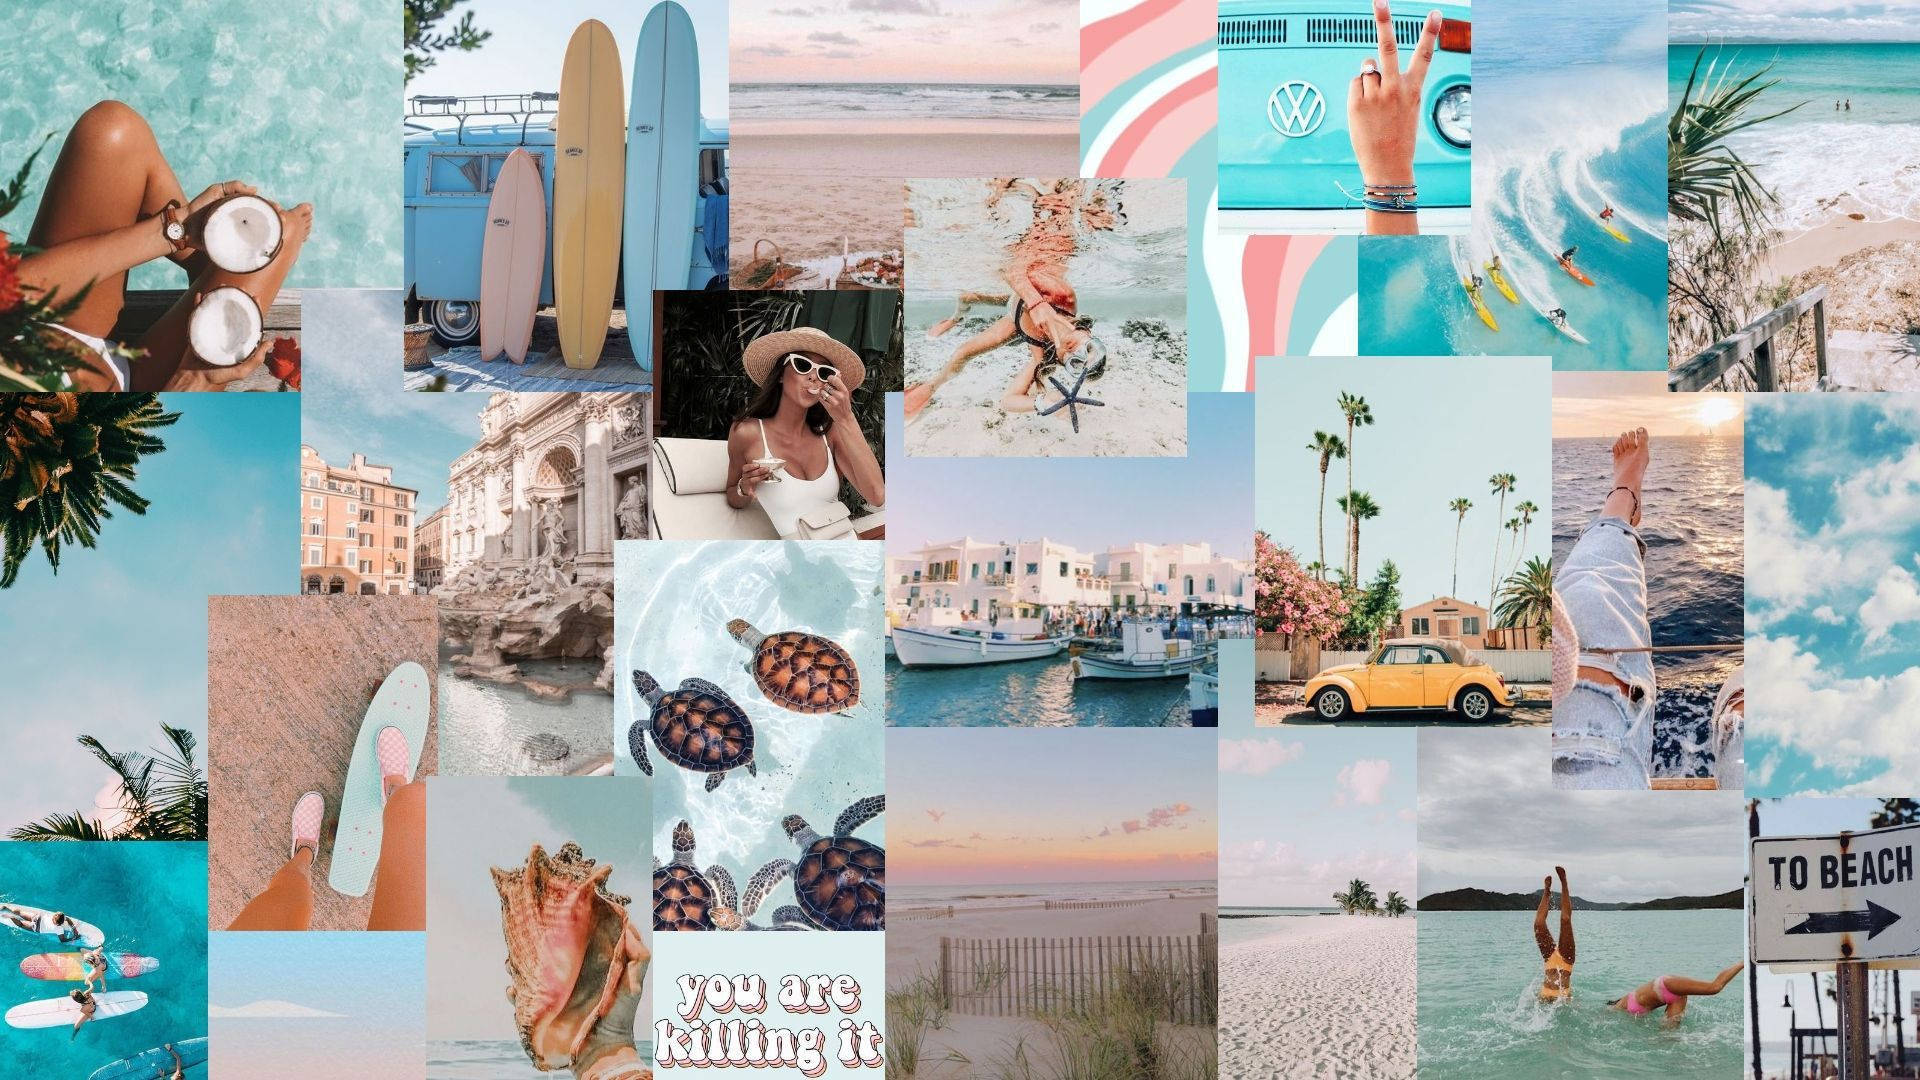 En collage af fotos af mennesker og strandscener Wallpaper